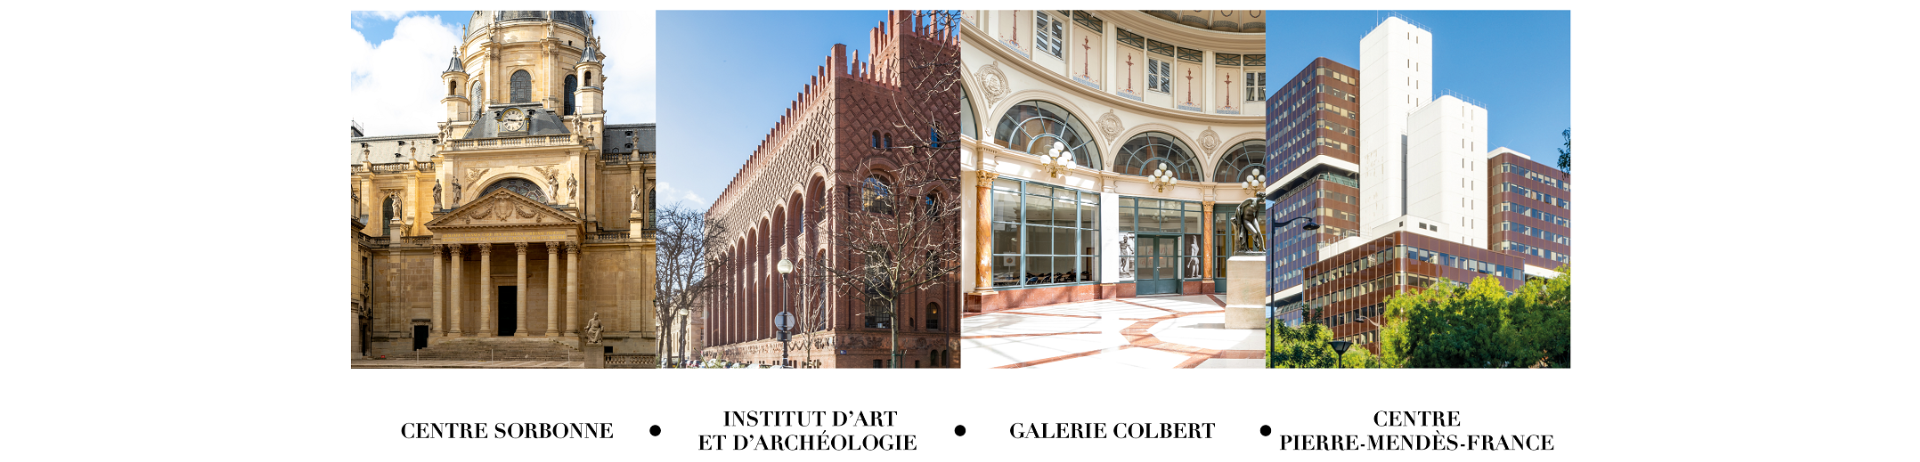 Centre Sorbonne, Institut d'Art et d'Archéologie, Galerie Colbert, Centre Pierre-Mendès-France